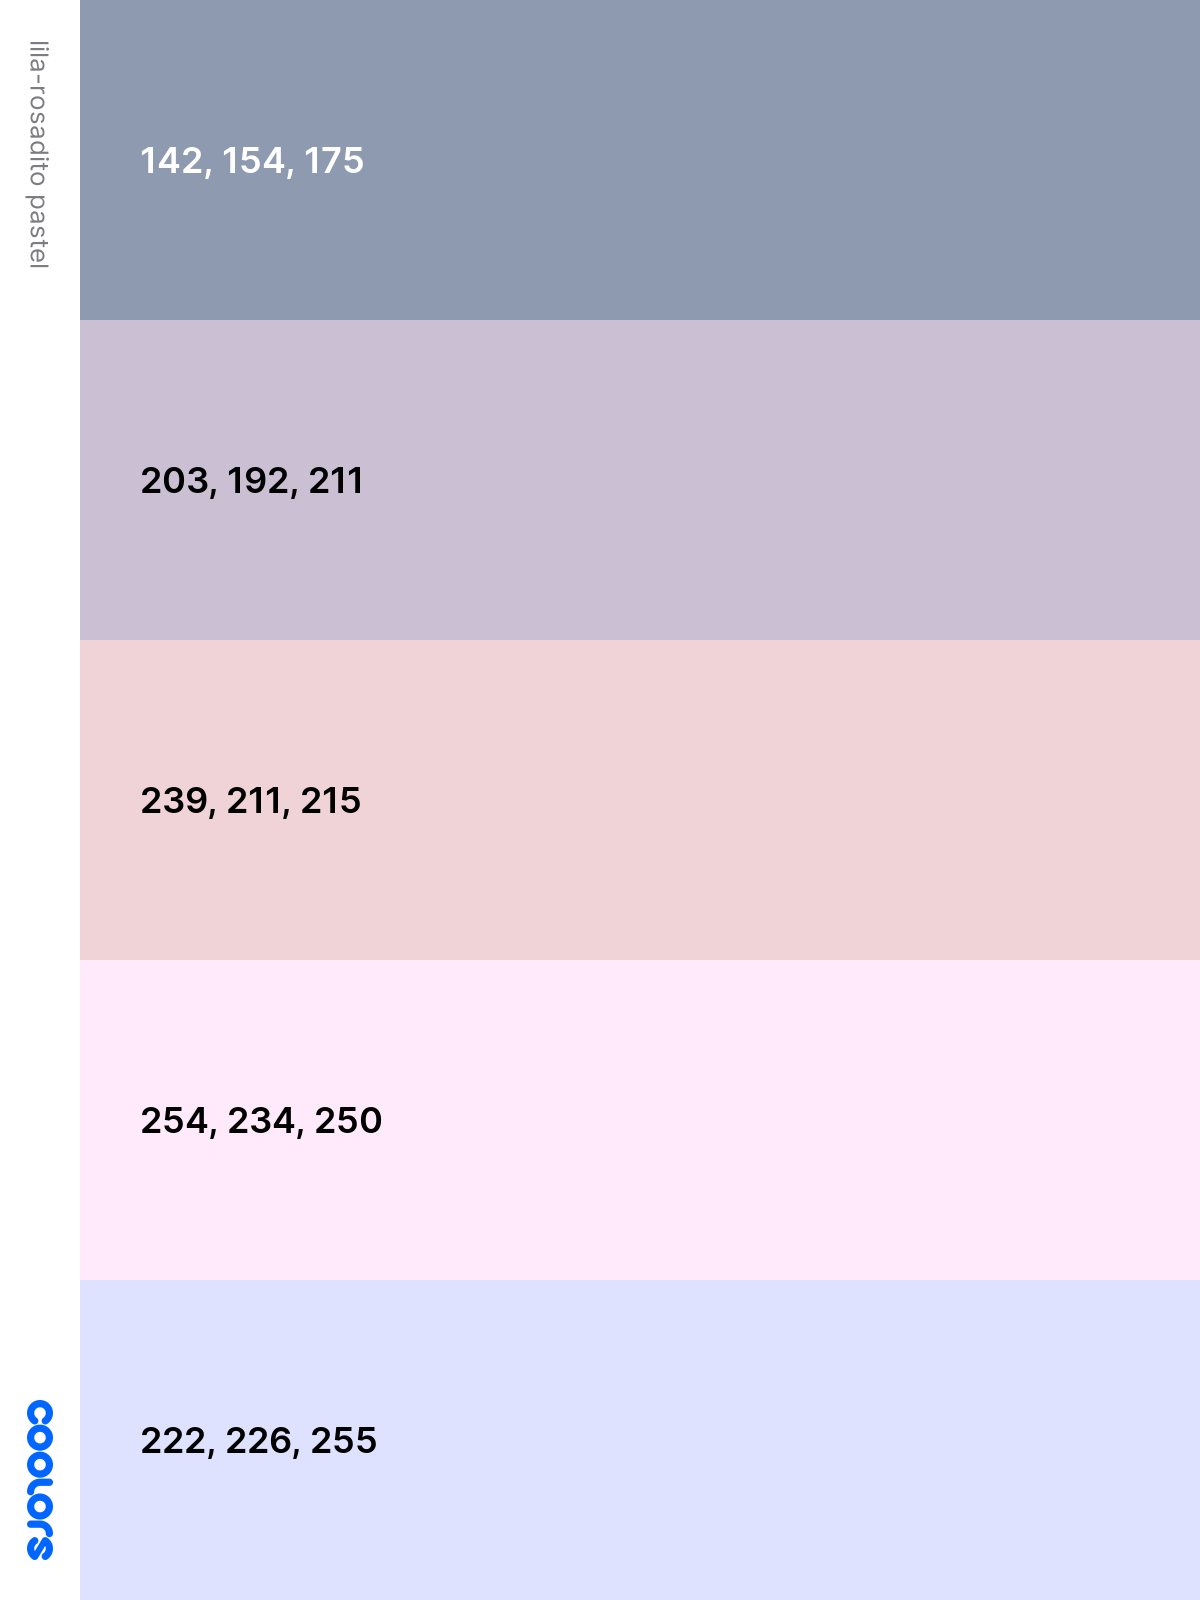 Paleta de color RGB para apuntes digitales o presentaciones en power point